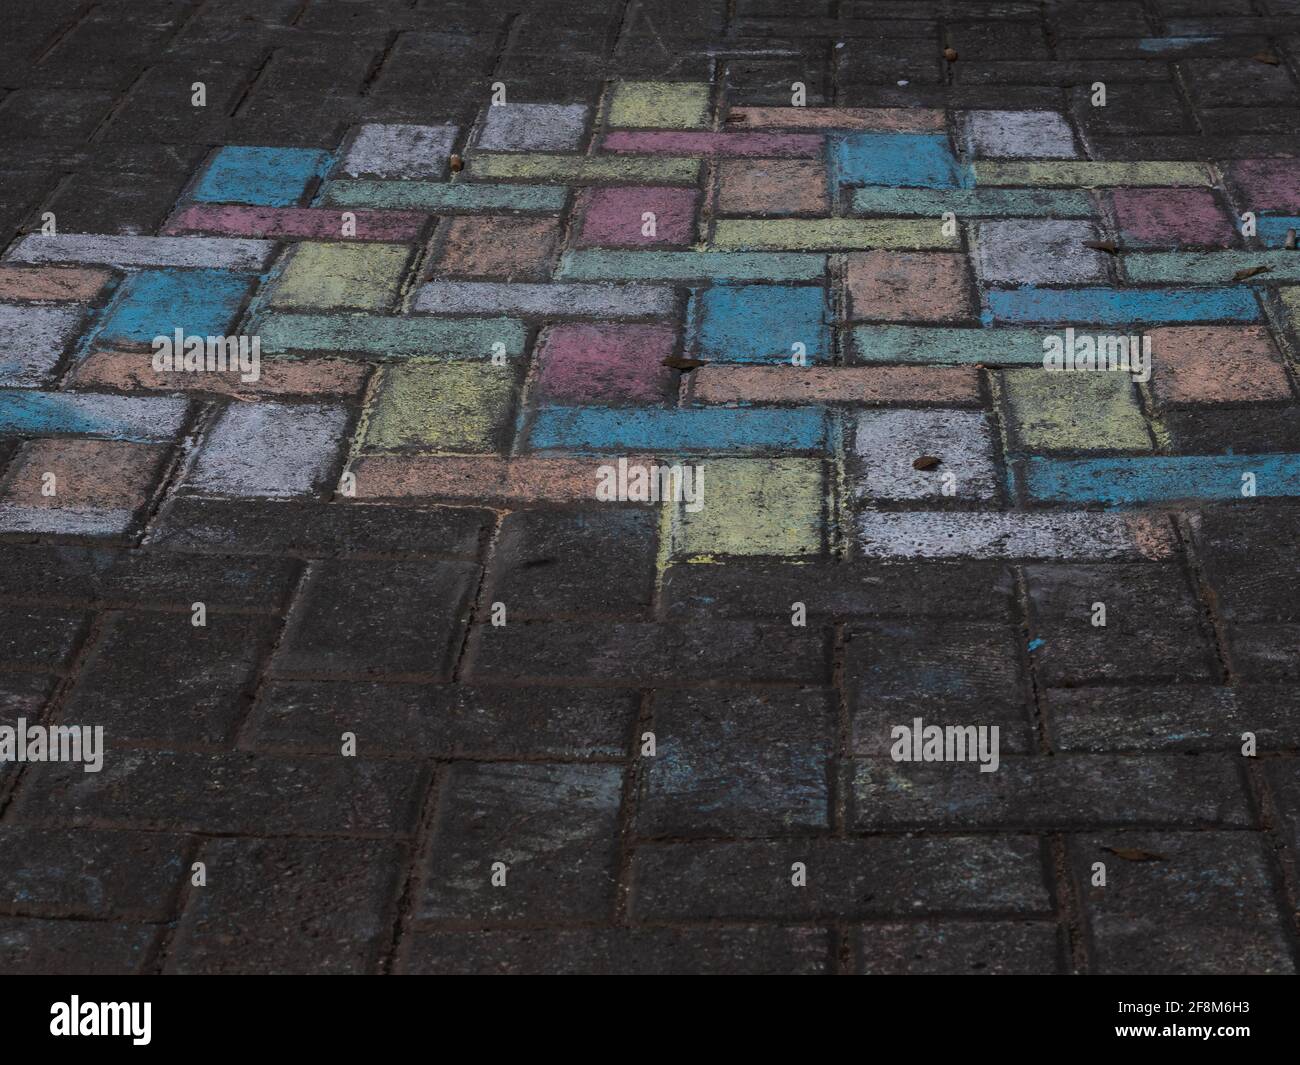 pavimentazione urbana in piastrelle, alcune delle quali sono colorate Foto Stock